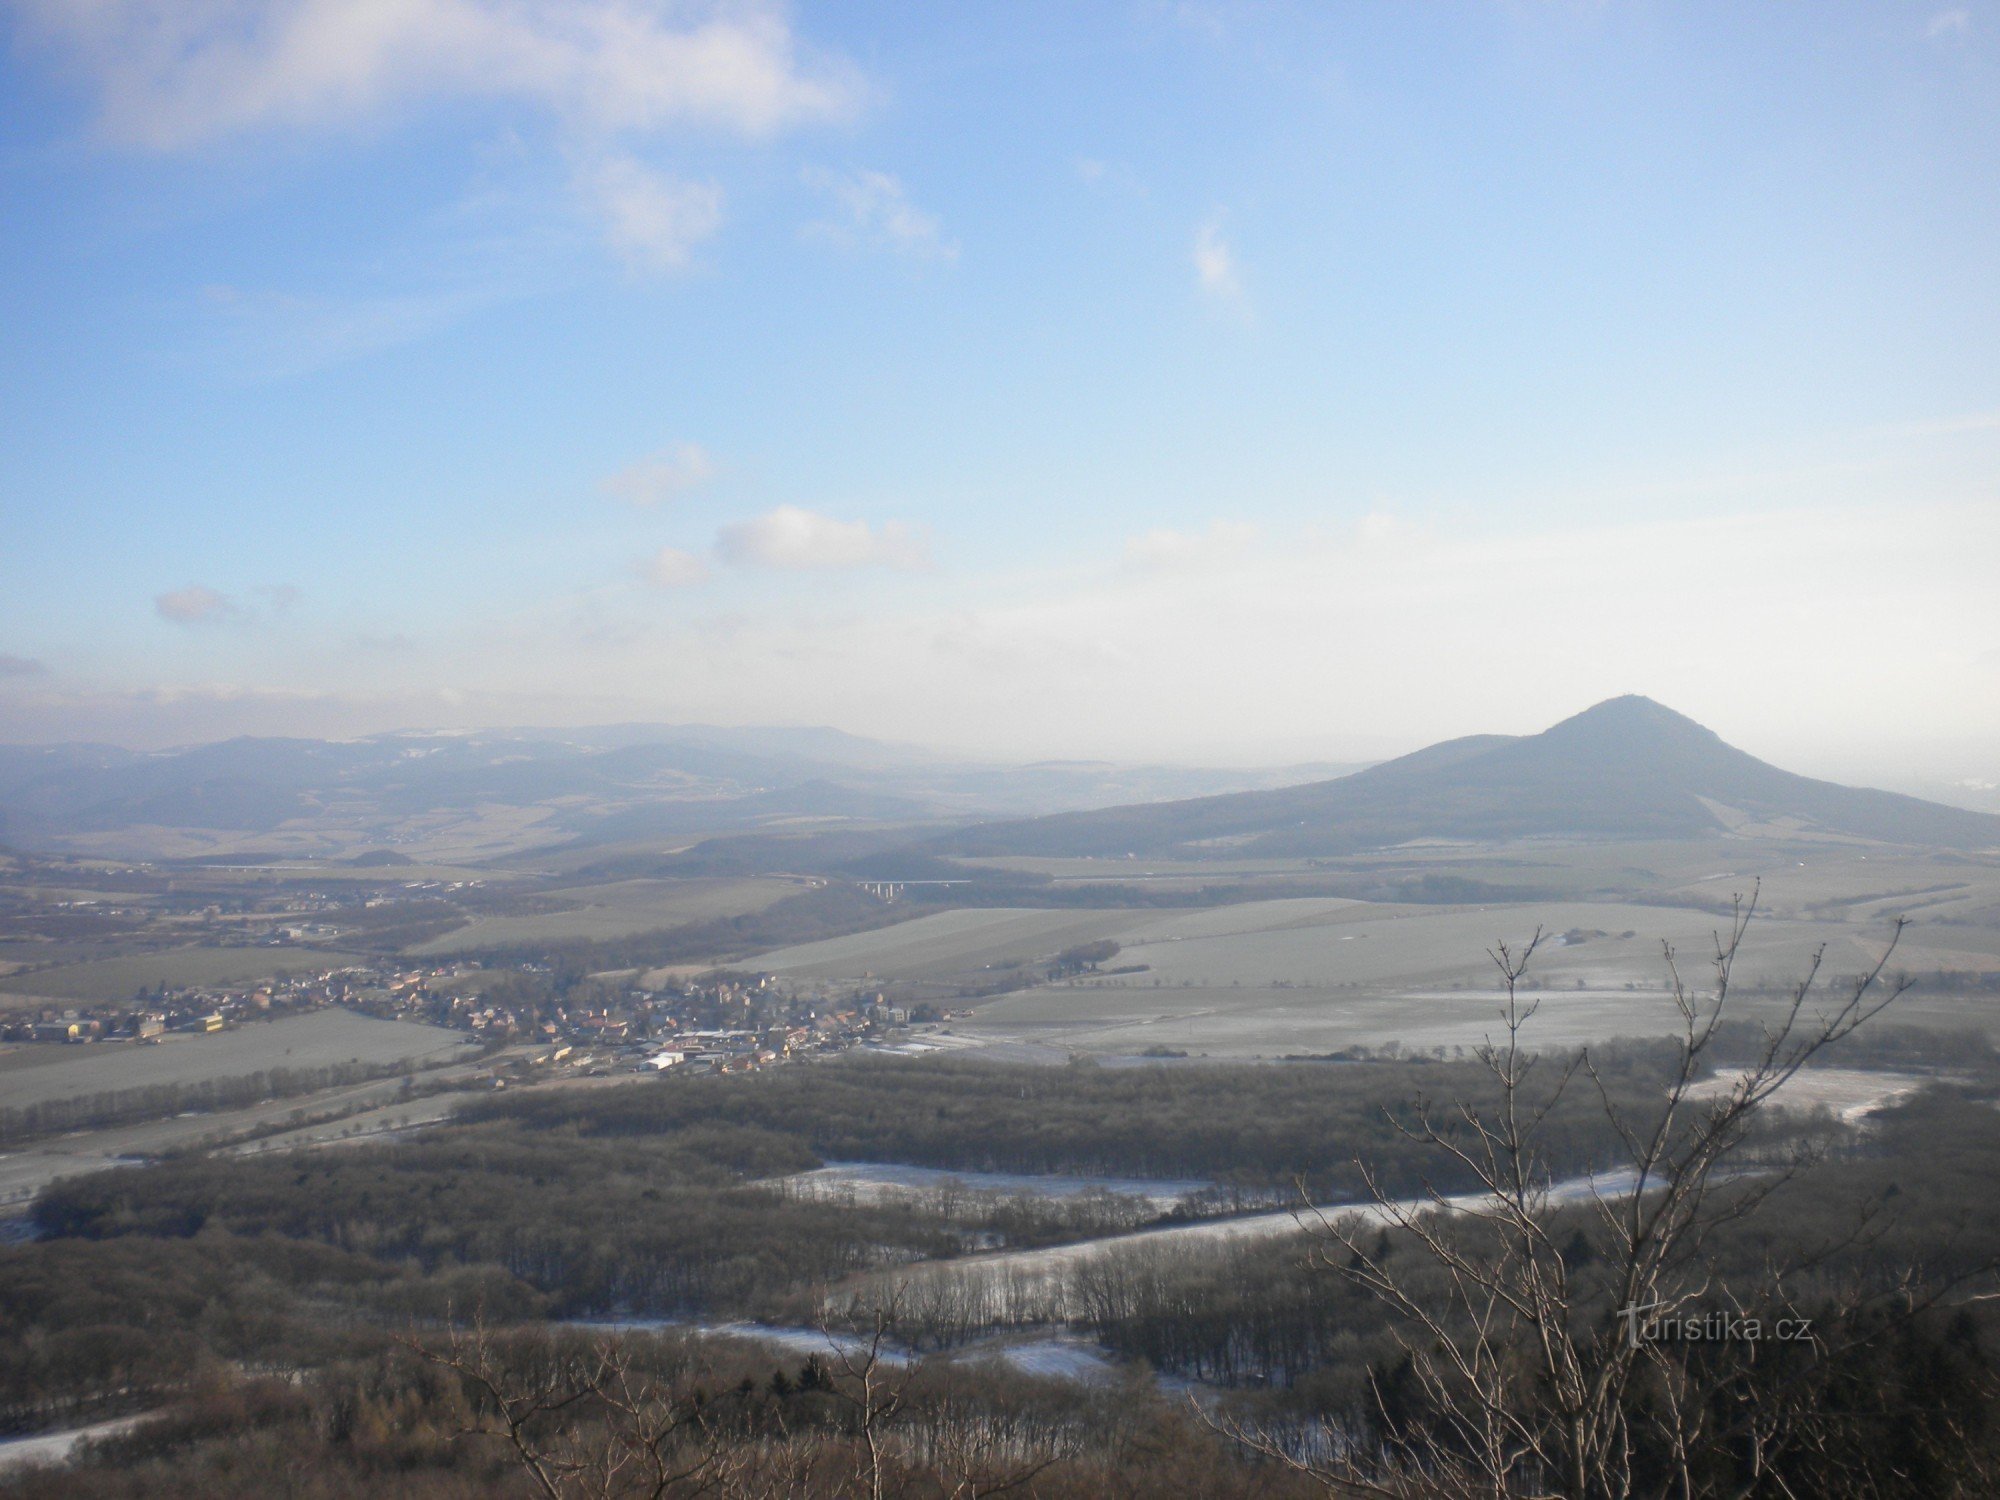 Άποψη της περιοχής από το Κάστρο Ostrý προς τα ανατολικά. Ο λόφος Lovoš σε πρώτο πλάνο.